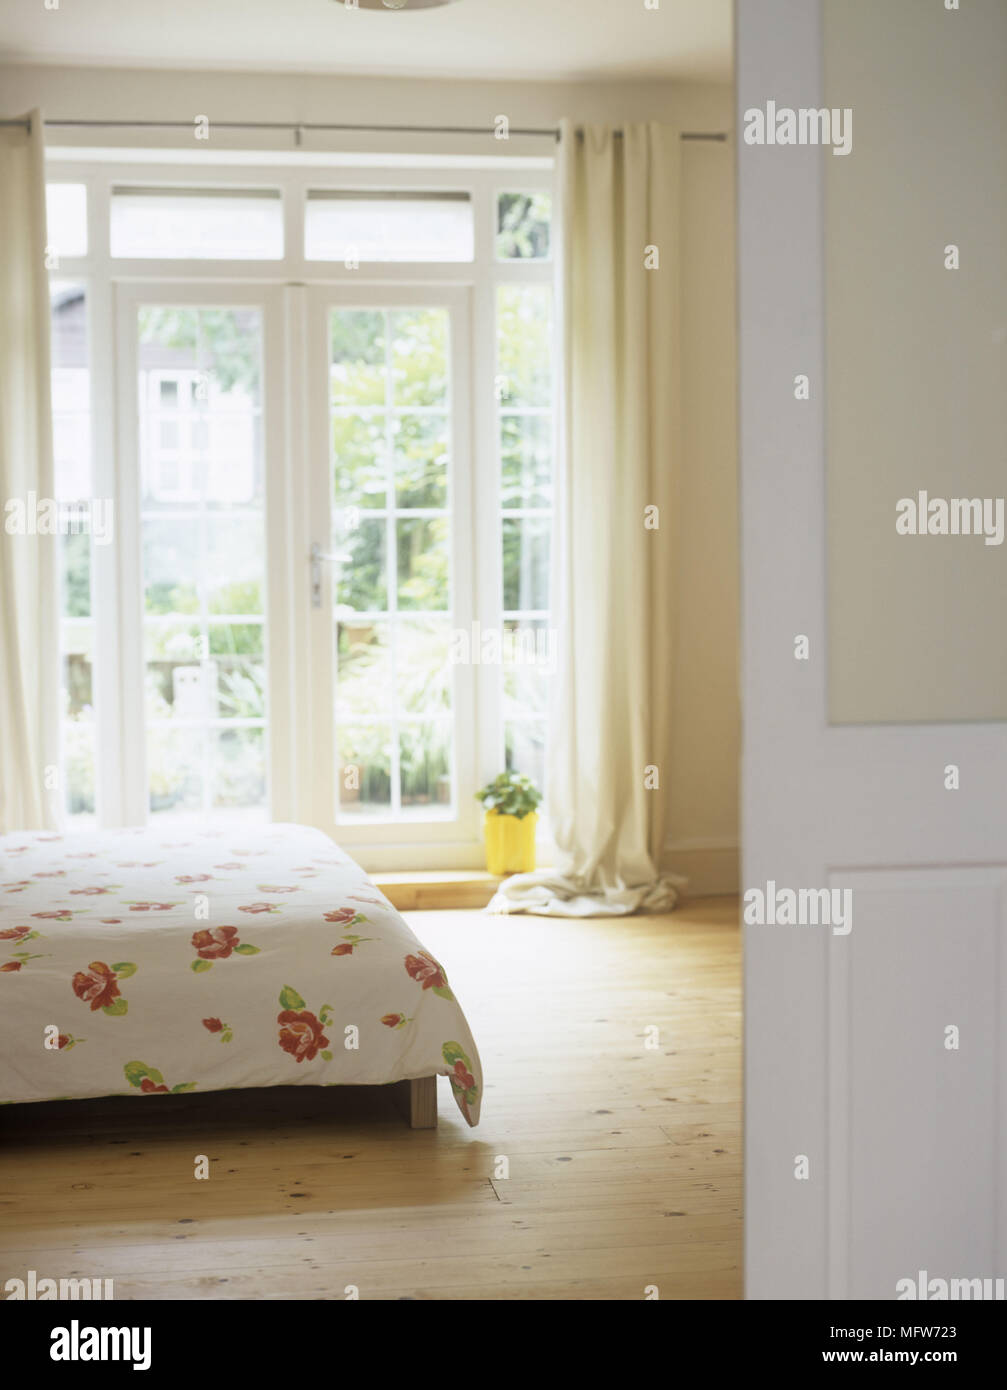 Ein Detail der ein modernes Schlafzimmer in neutralen Farben Doppelbett mit Blumenmuster Abdeckung Holz, französischen Fenstern Vorhänge obwohl offene Tür gesehen Stockfoto